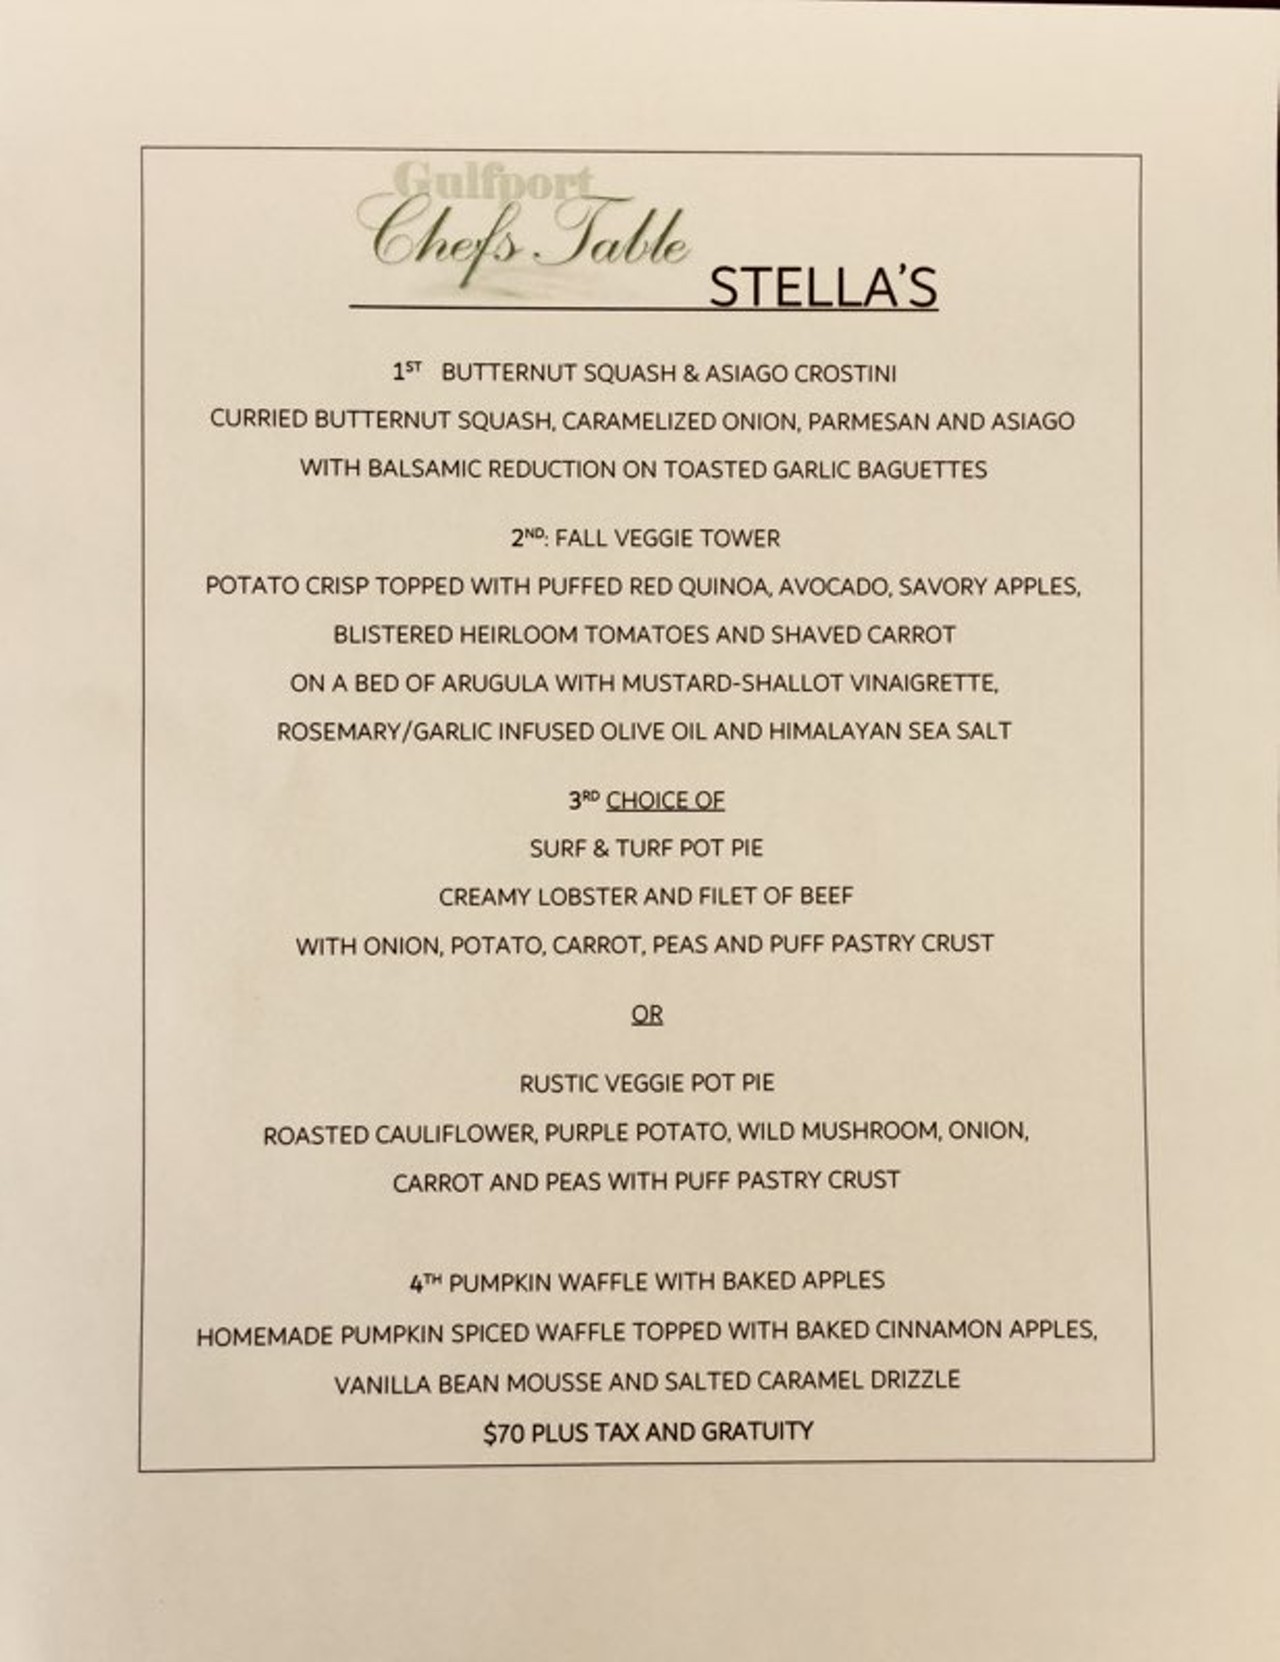 Stella's Chef's Table menu 2018